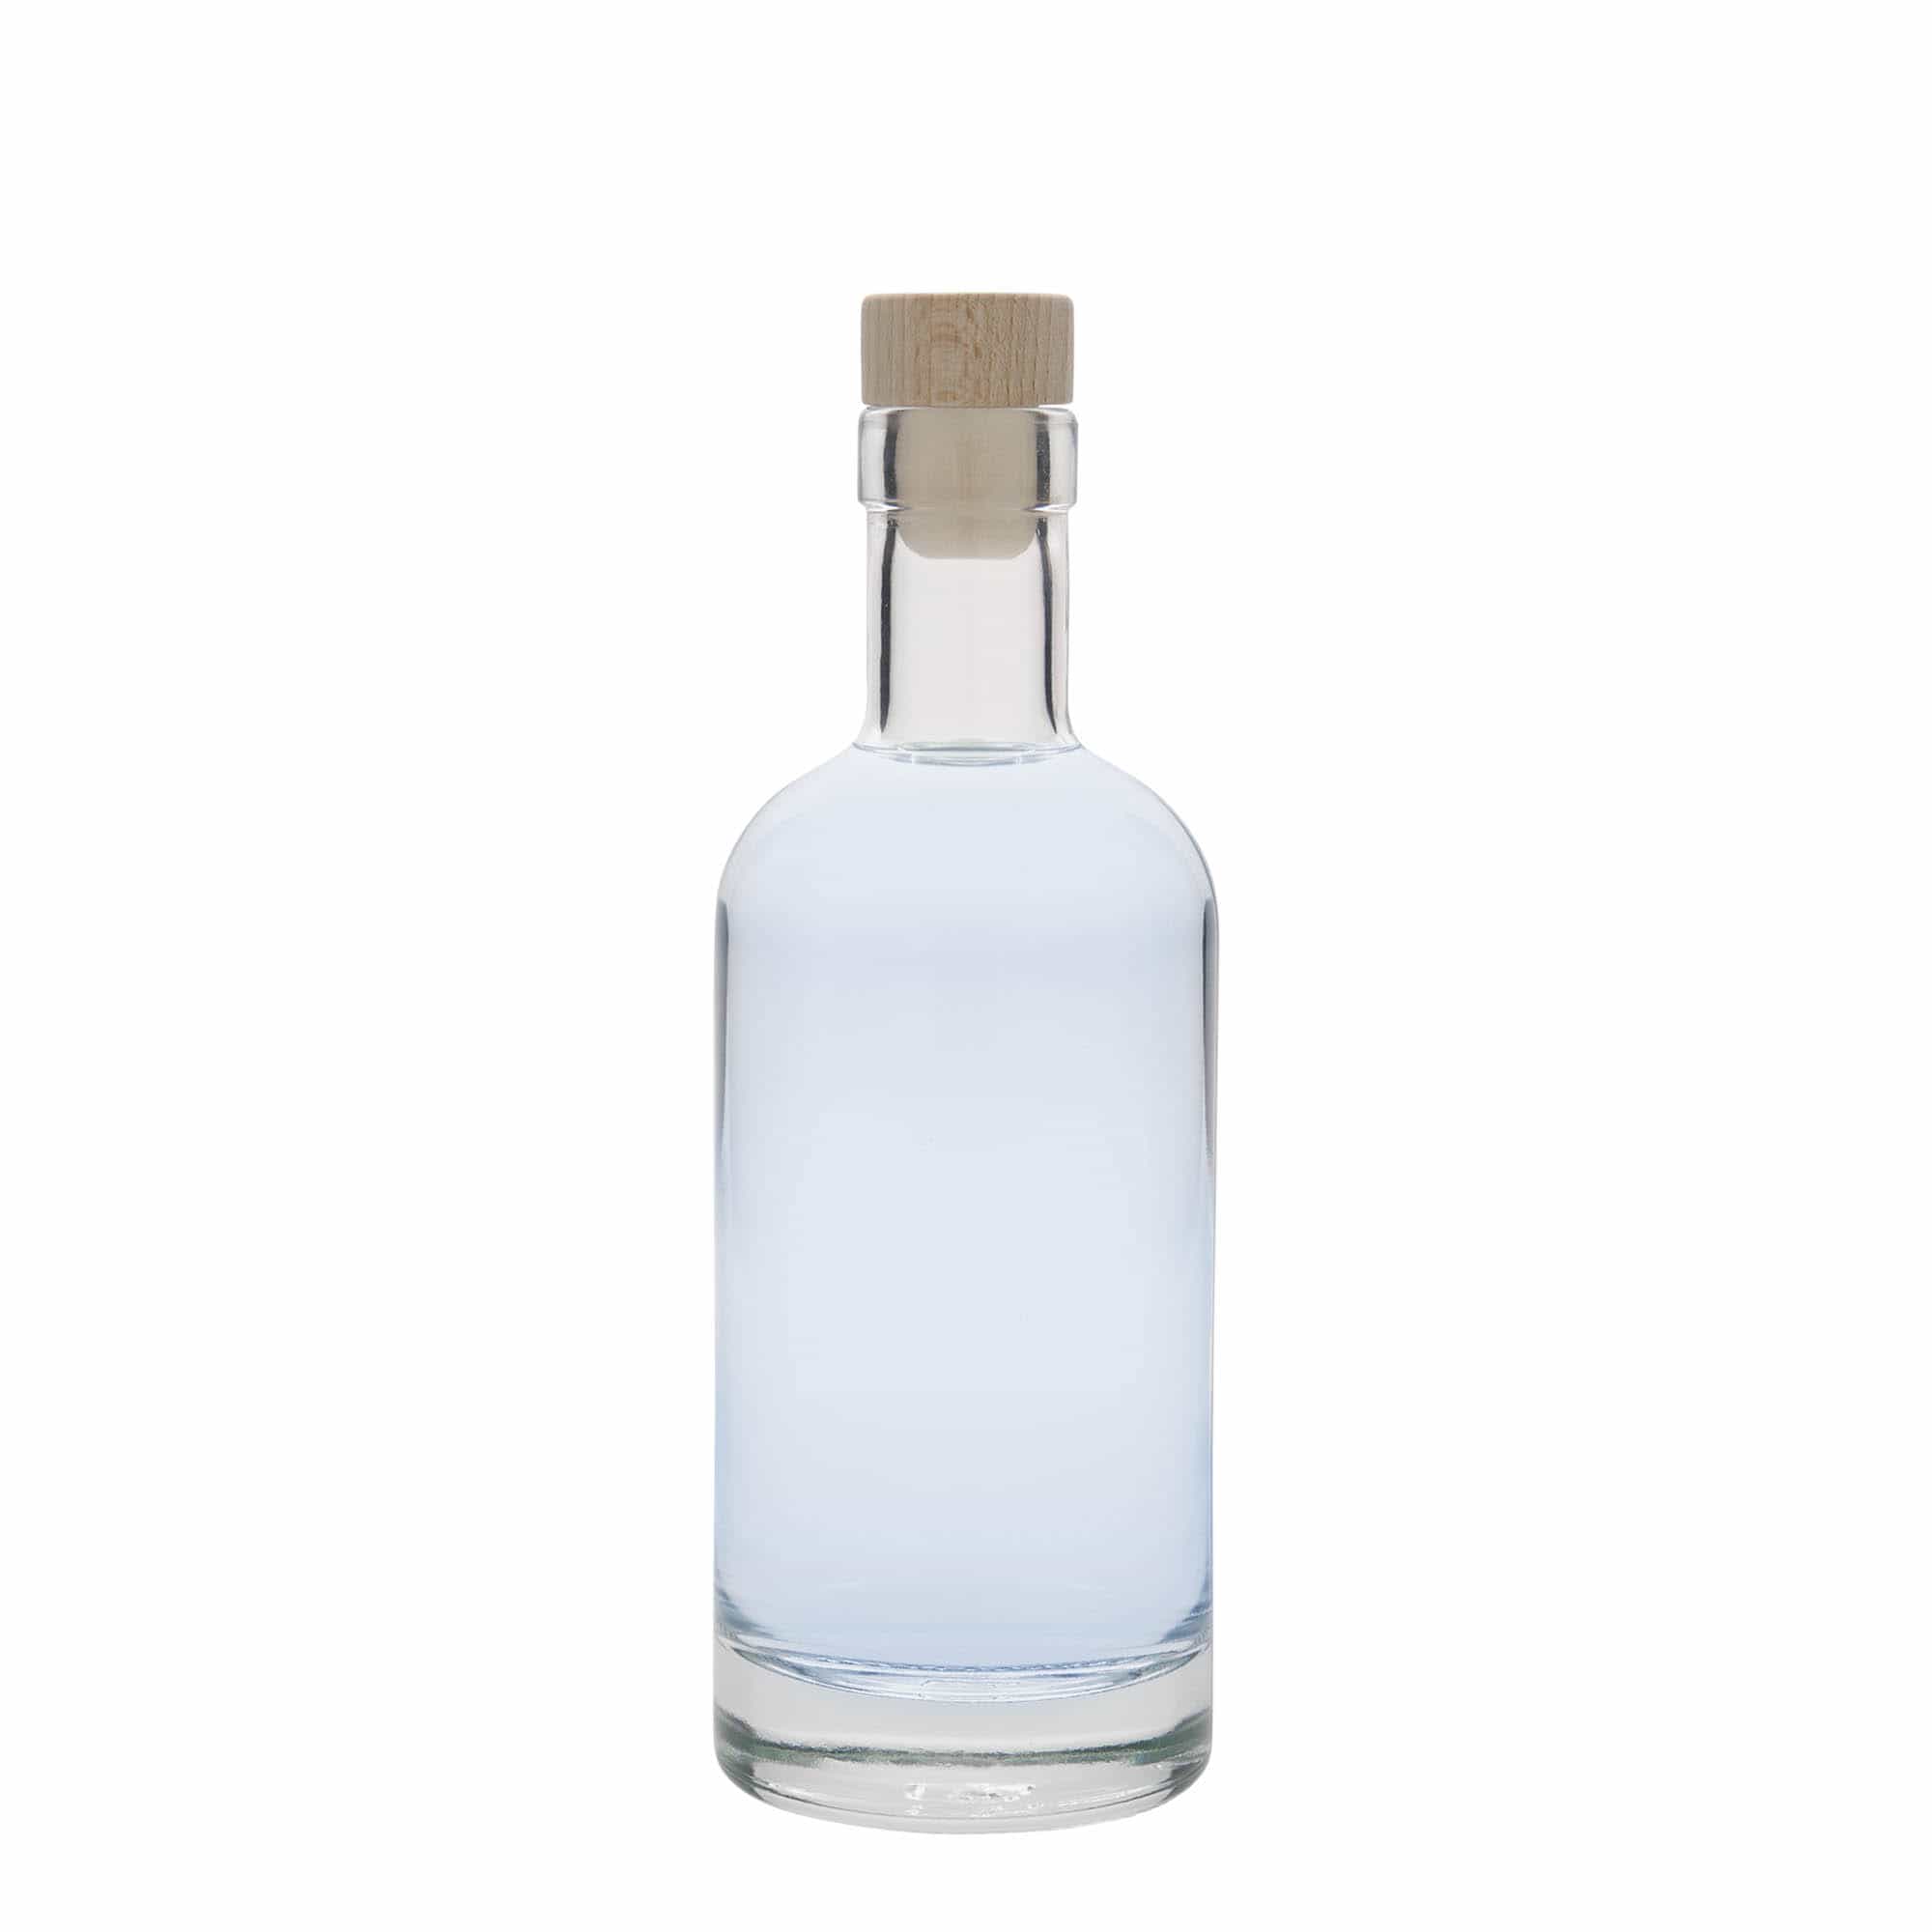 350 ml glass bottle 'Linea Uno', closure: cork